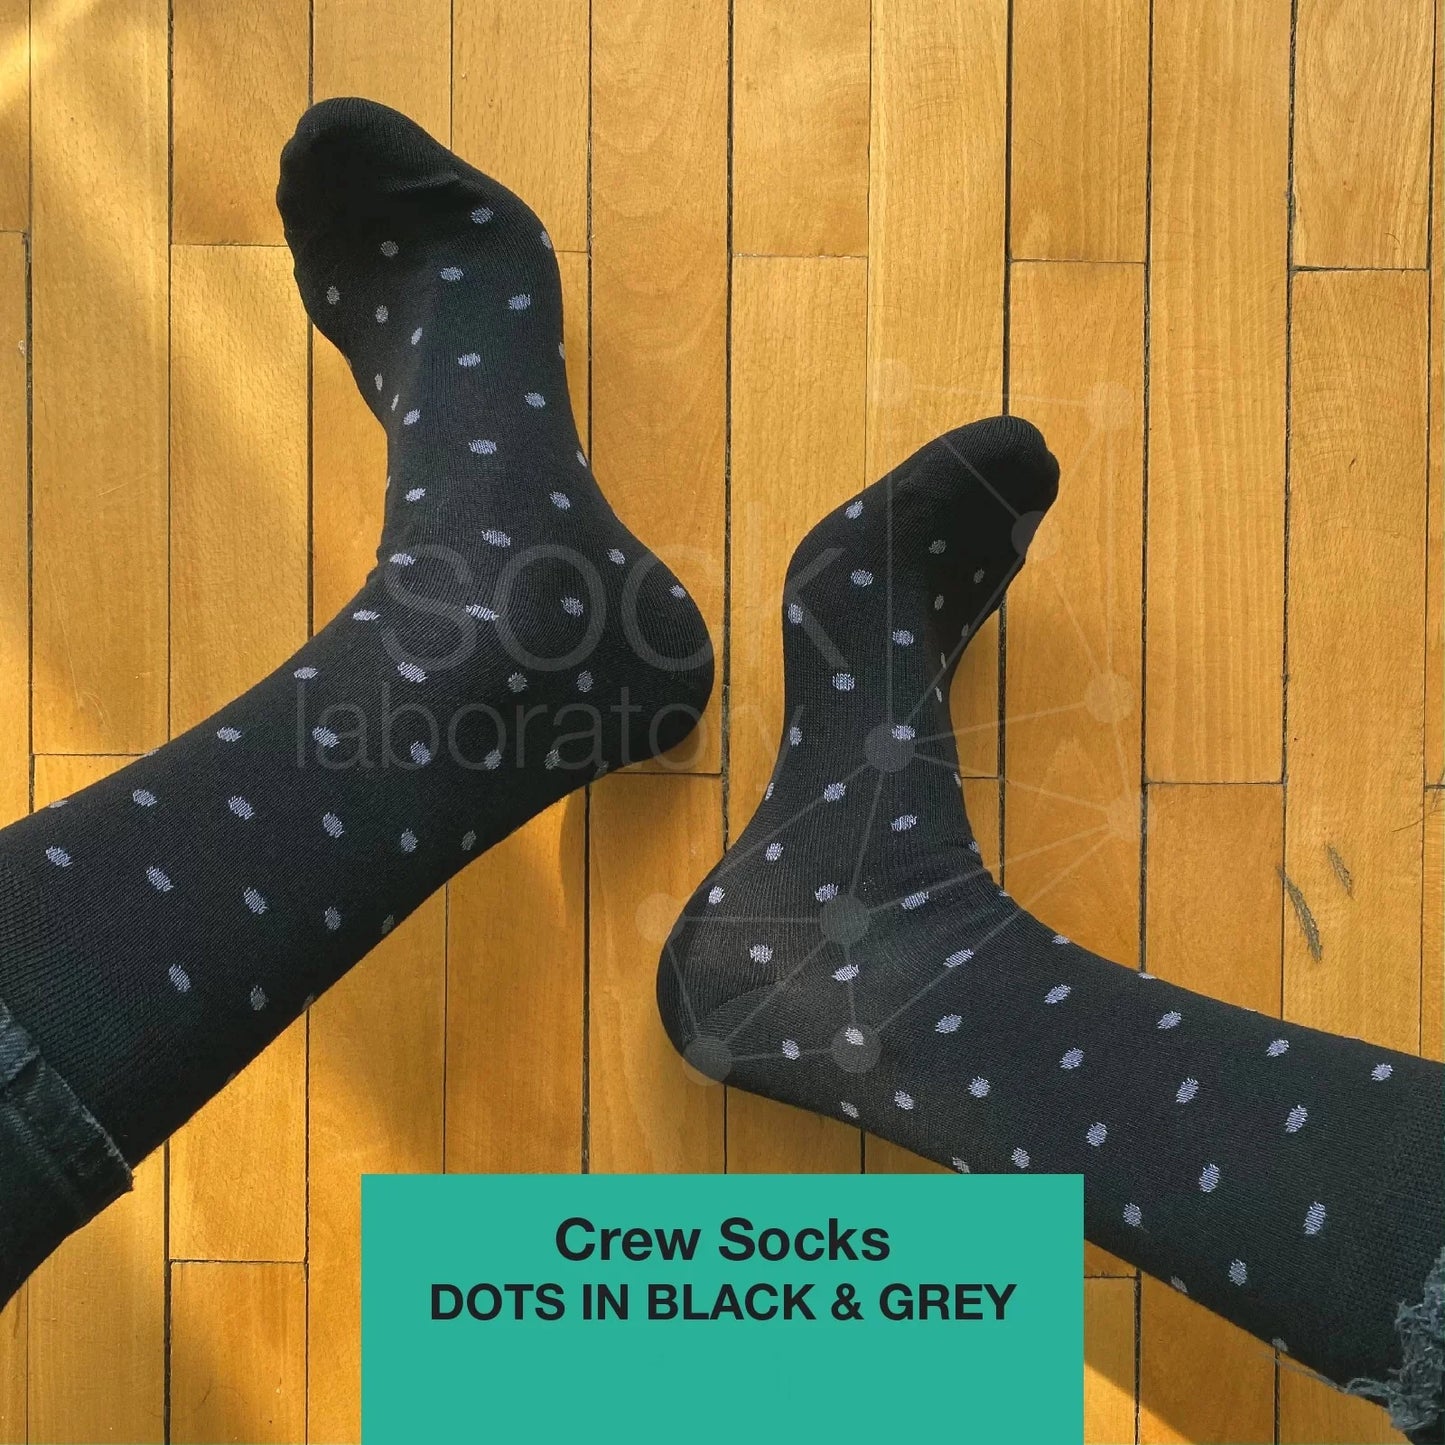 CREW SOCKS - Set of 3 / Black / Grey / Dots in Black & Grey